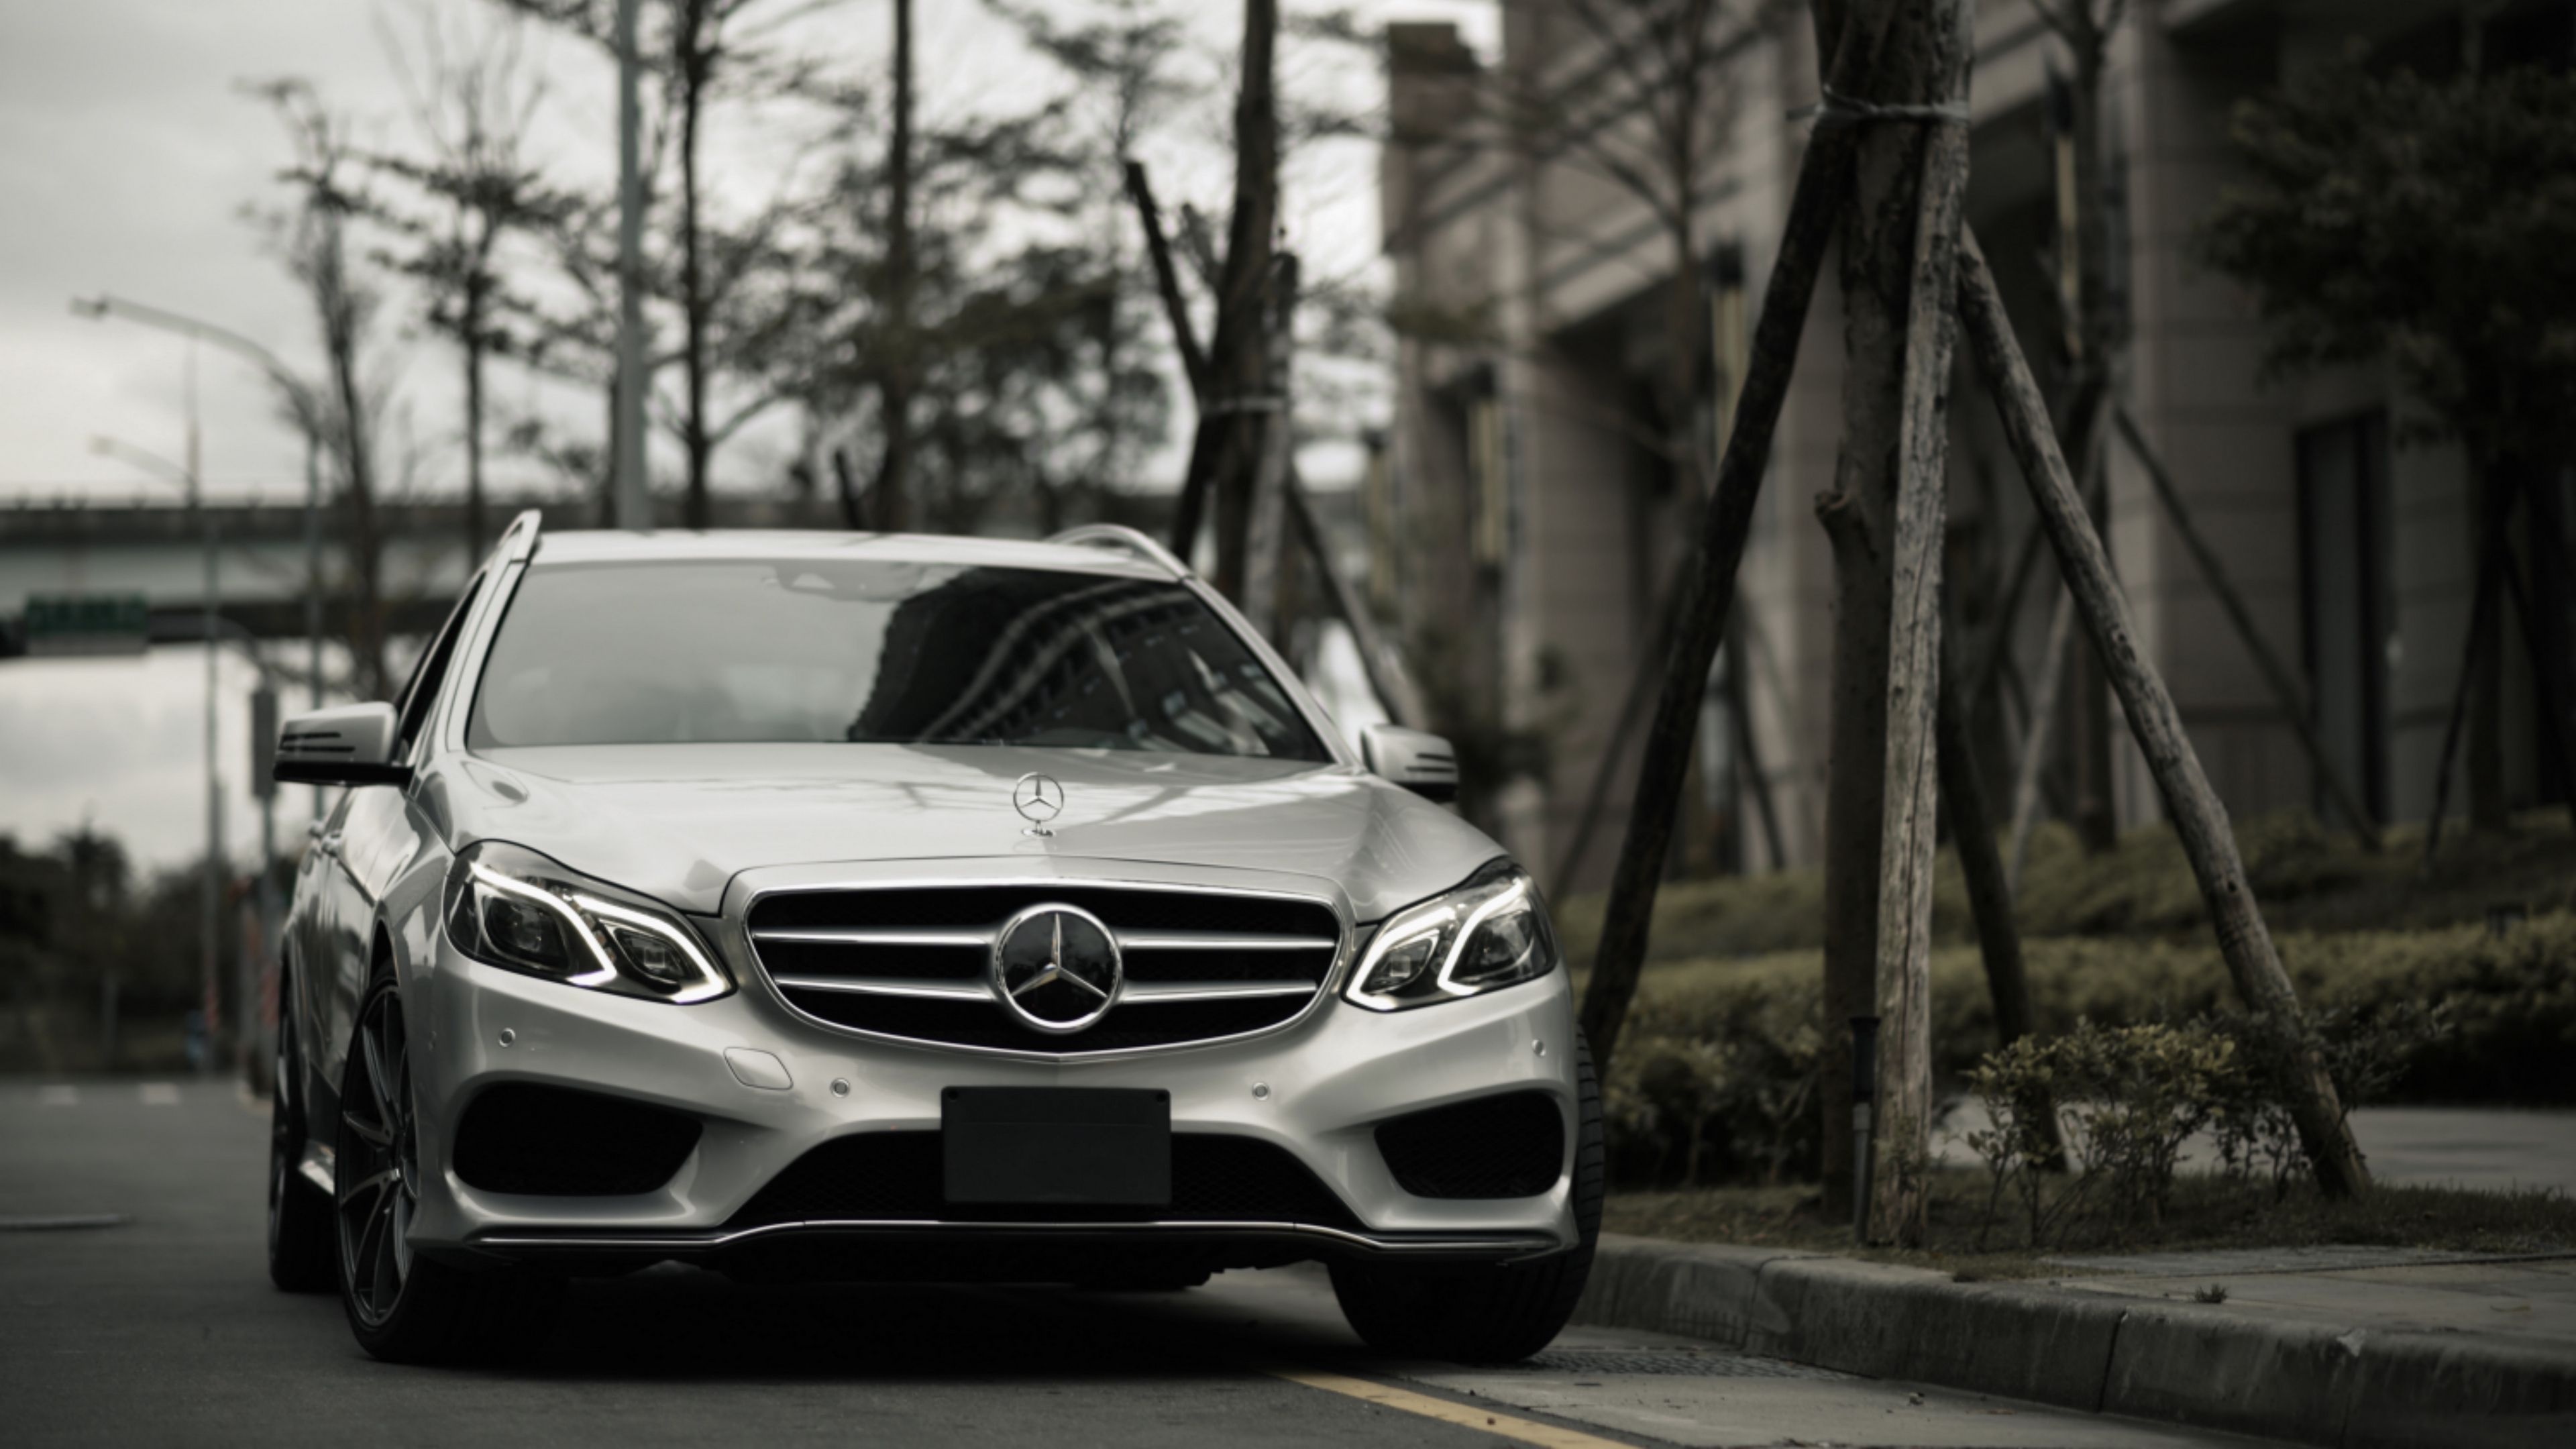 Mercedes-Benz E-Class, Luxury sedan, Top-notch wallpapers, High quality, 3840x2160 4K Desktop